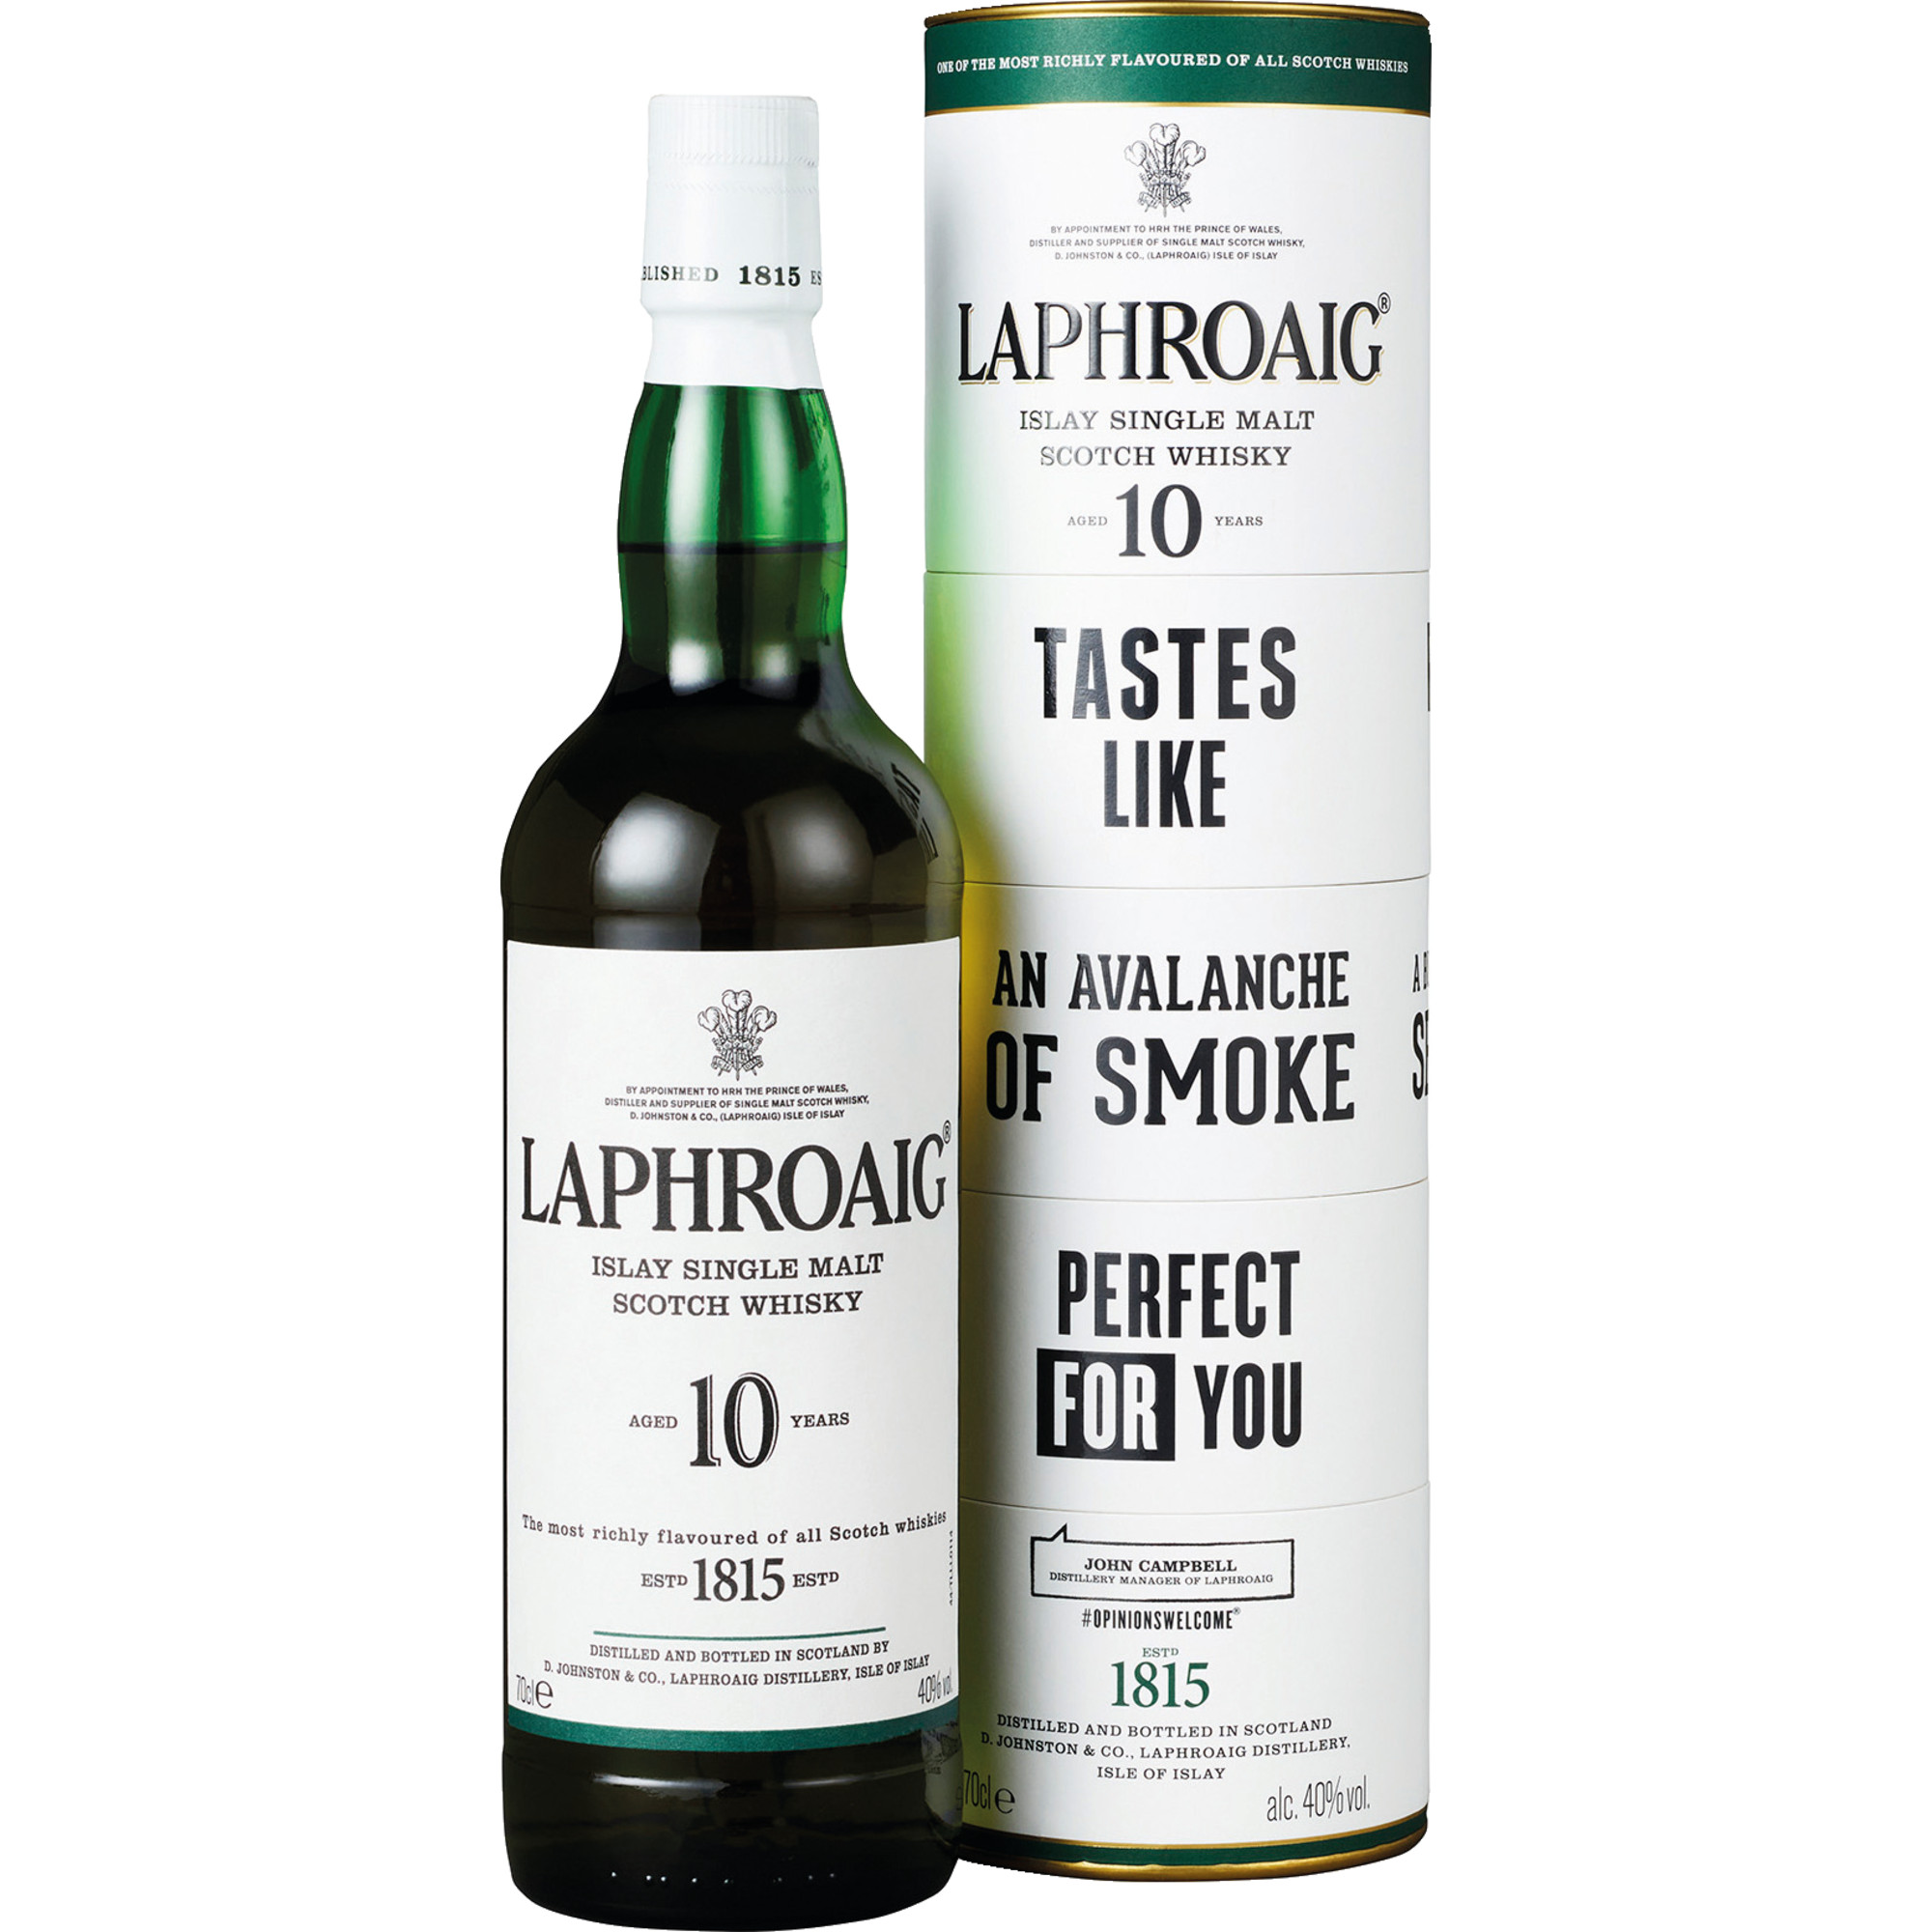 Laphroaig 10 Years Isle of Islay Single Malt, Whisky, 0,7 L,40% Vol., Twisted Geschenkverpackung, Schottland, Spirituosen  Spirituosen Hawesko